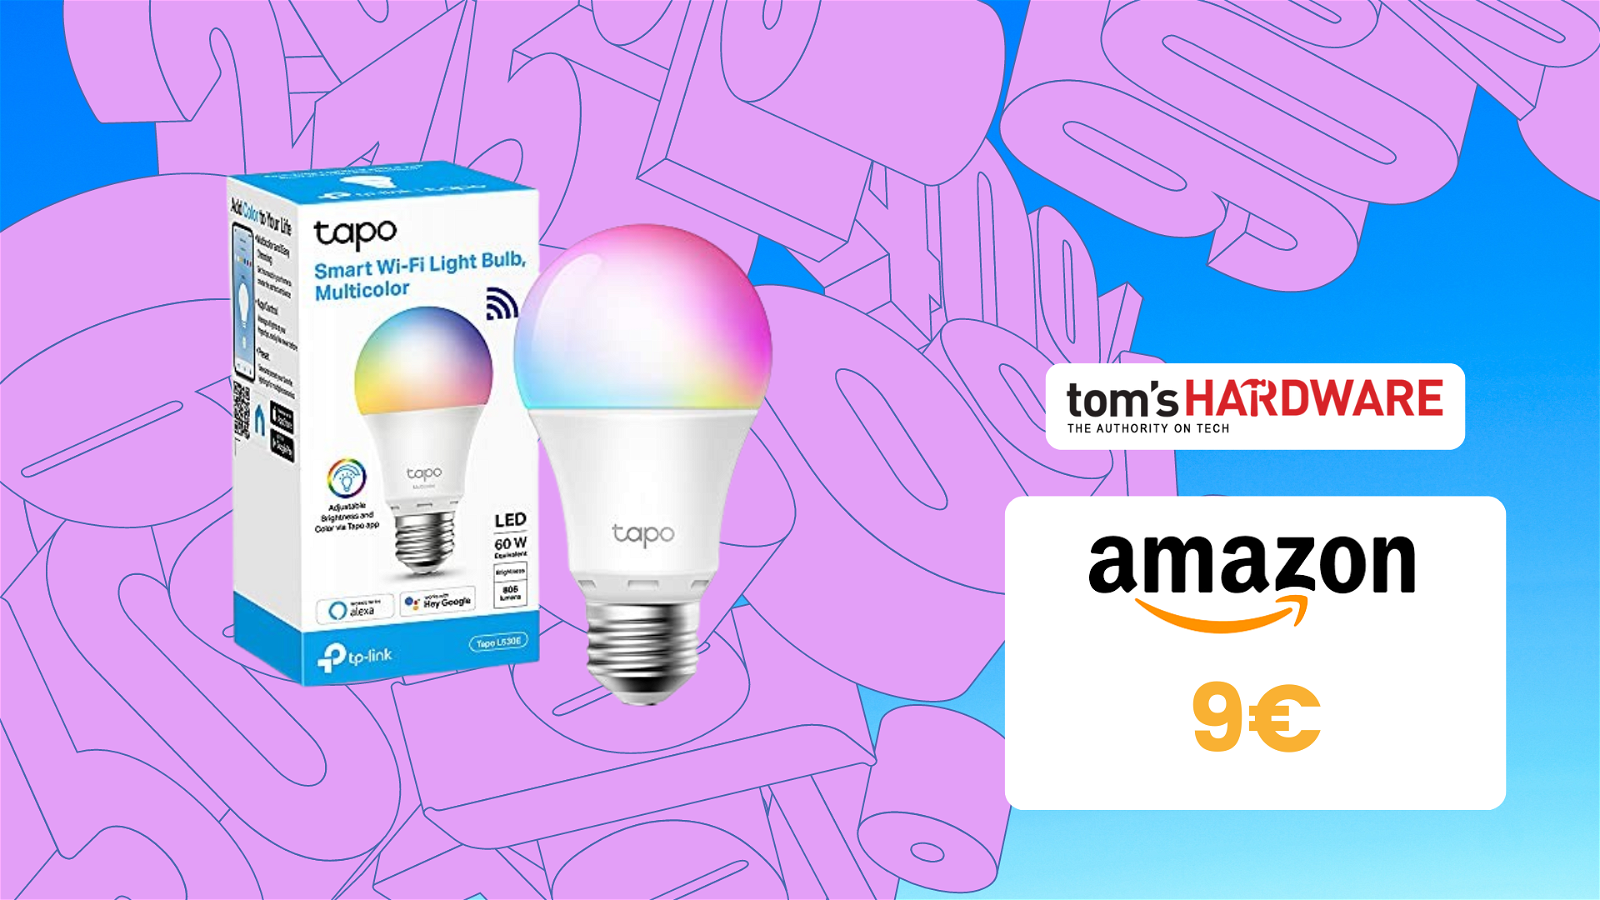 Immagine di La bellissima lampadina LED smart multicolore a SOLI 9€!